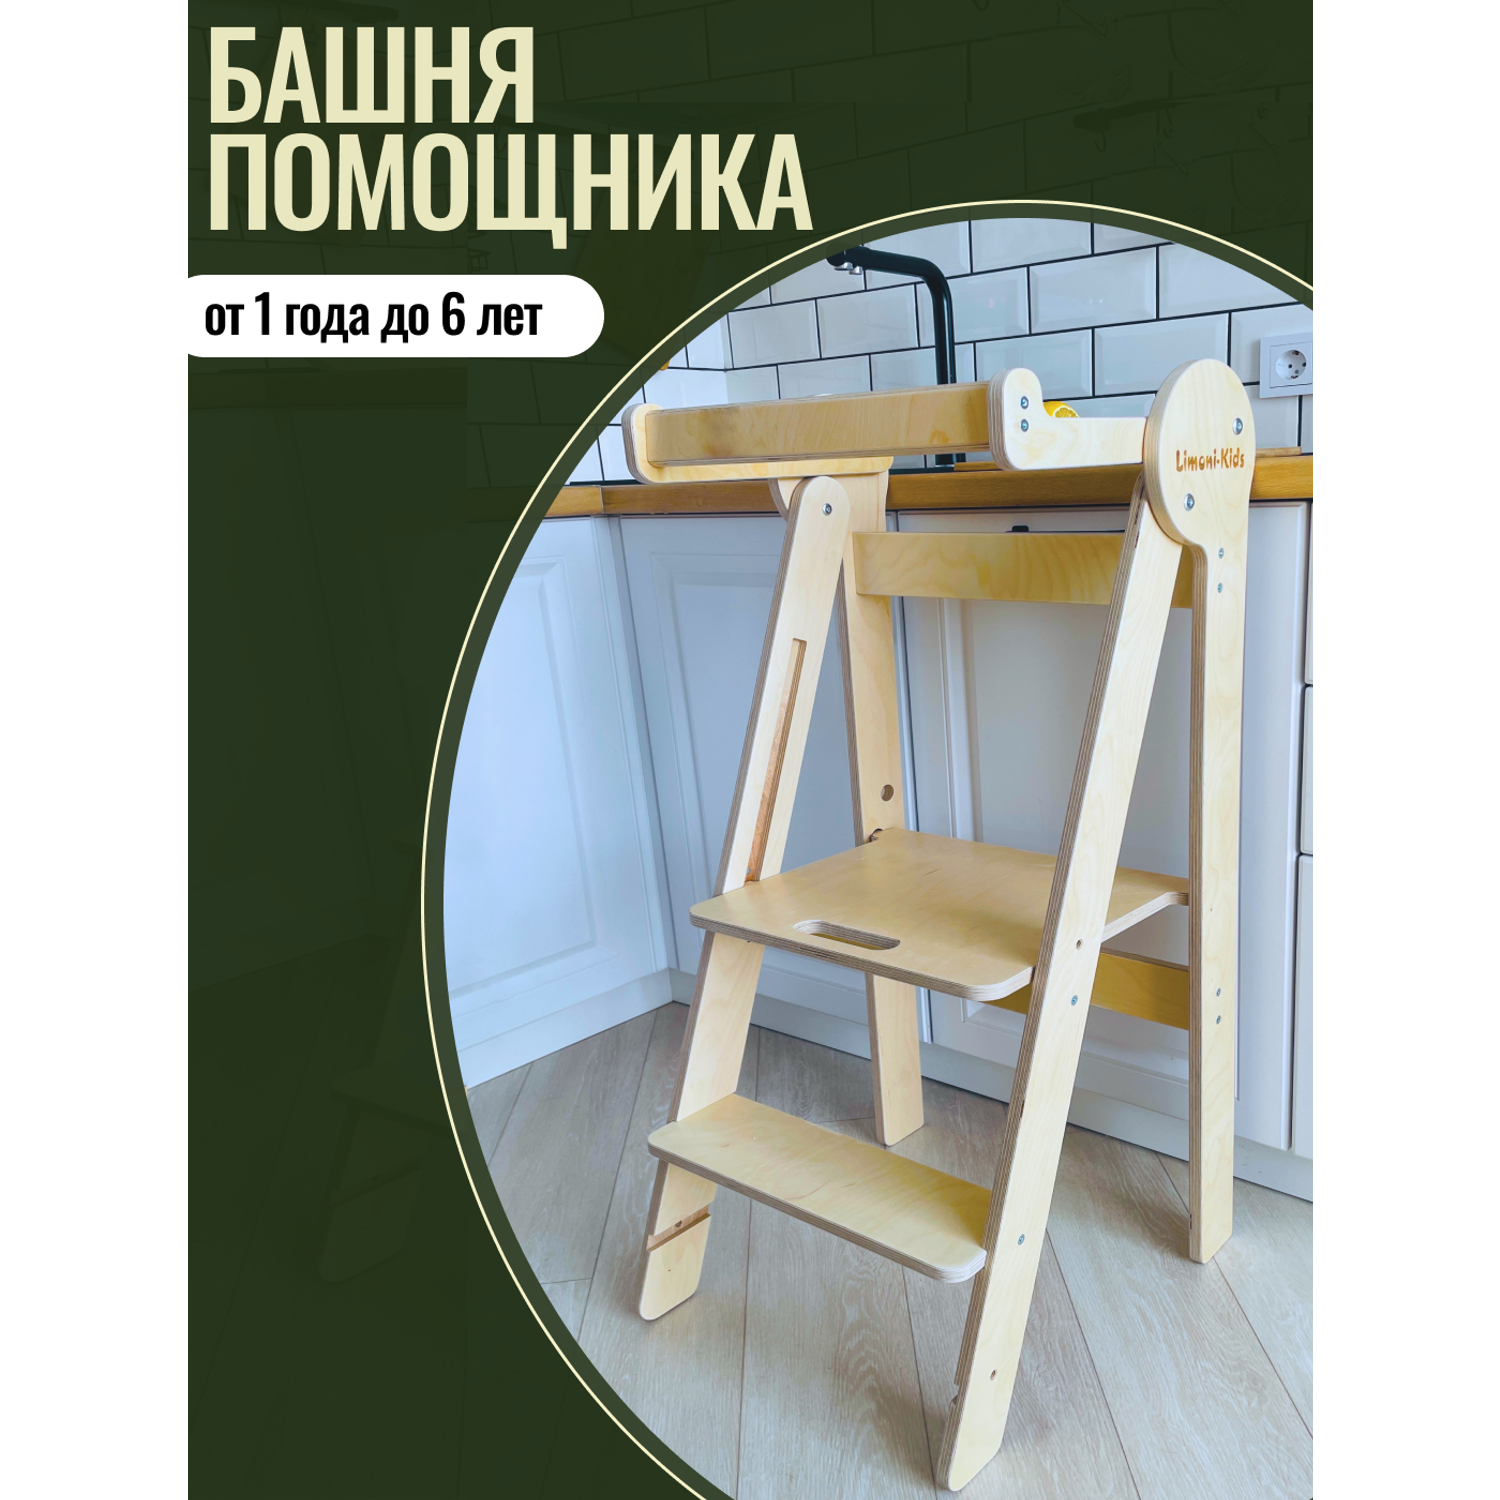 Башня помощника Limoni-Kids Регулируемый по высоте стул - подставка для ног детская - фото 2